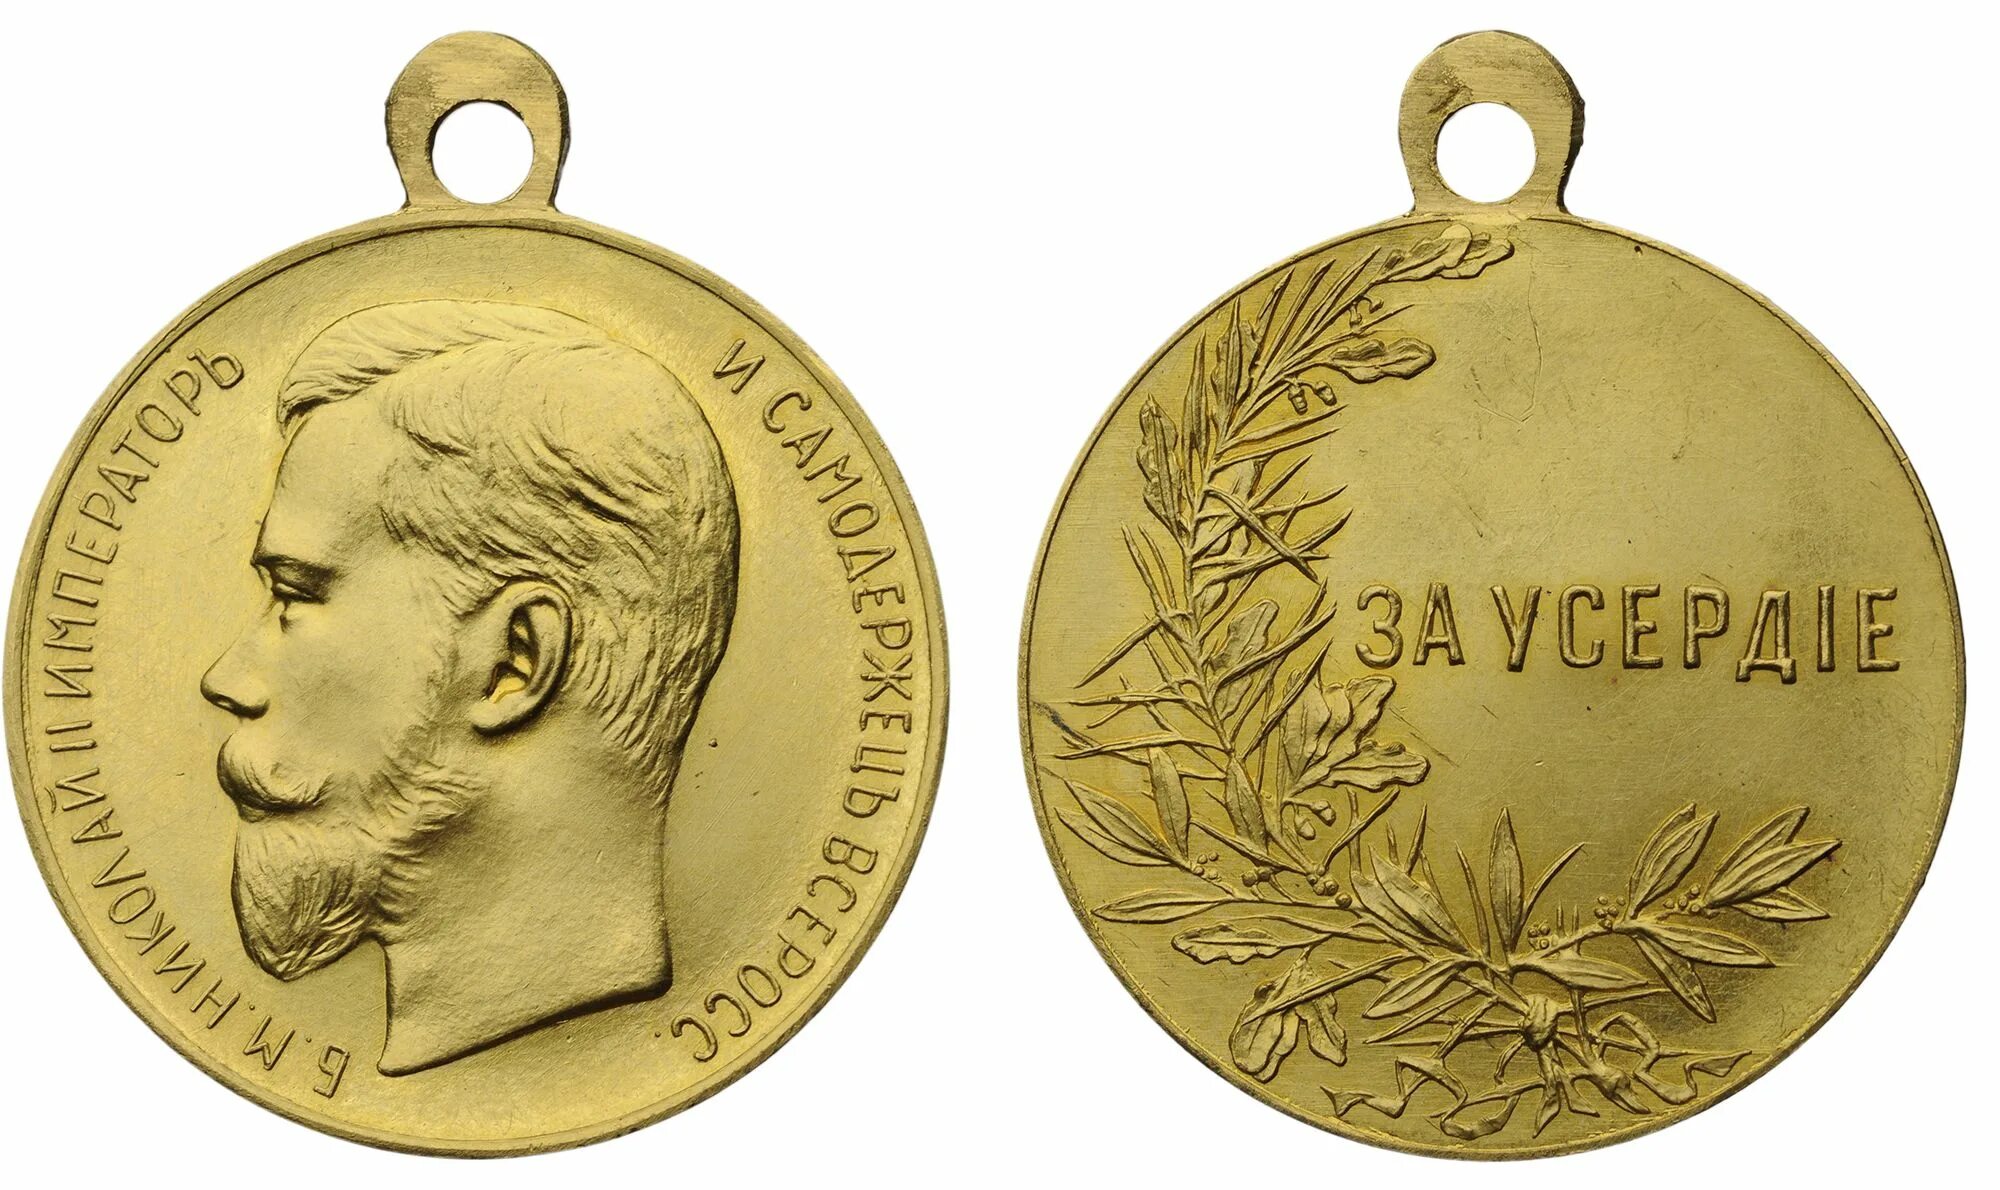 Серебряная медаль Николая 2 за усердие. Медаль за усердие на Анненской ленте. Медали российских императоров